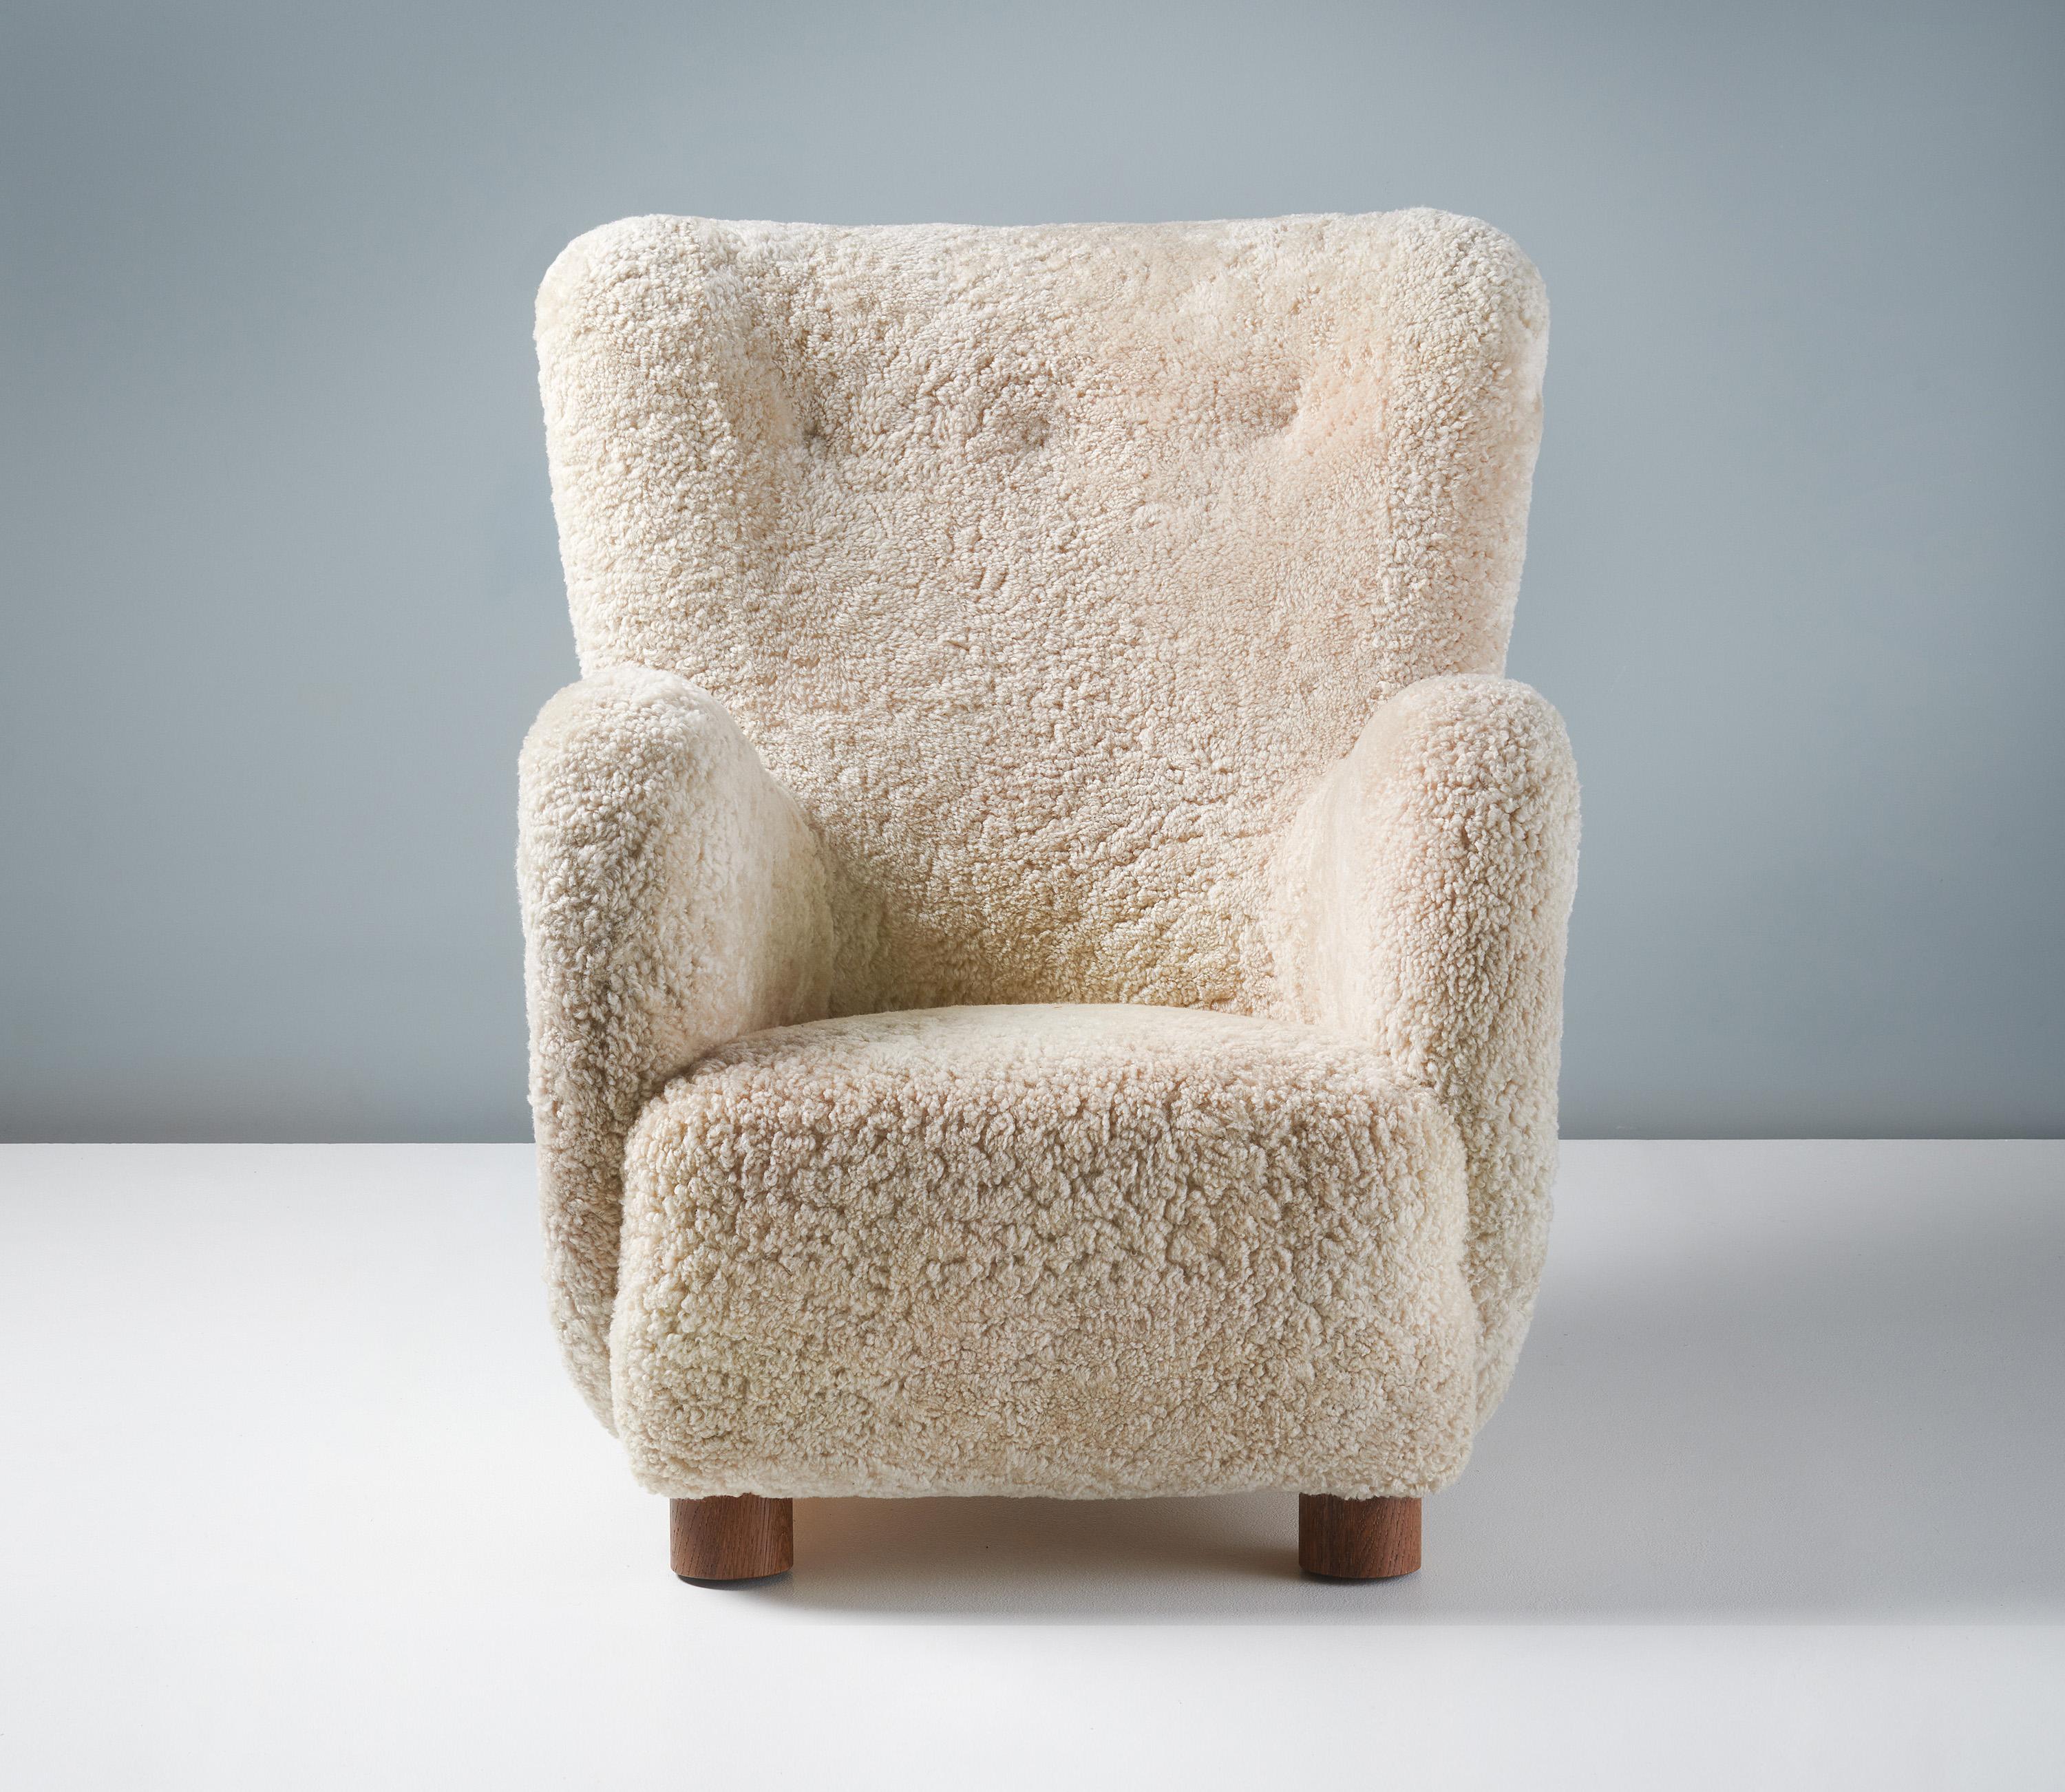 Fauteuil en peau de mouton d'ébéniste danois, vers les années 1940.

Cette grande chaise longue produite par un ébéniste danois dans les années 1940 est typique des chaises longues danoises de l'époque. Il présente un dossier légèrement incurvé avec